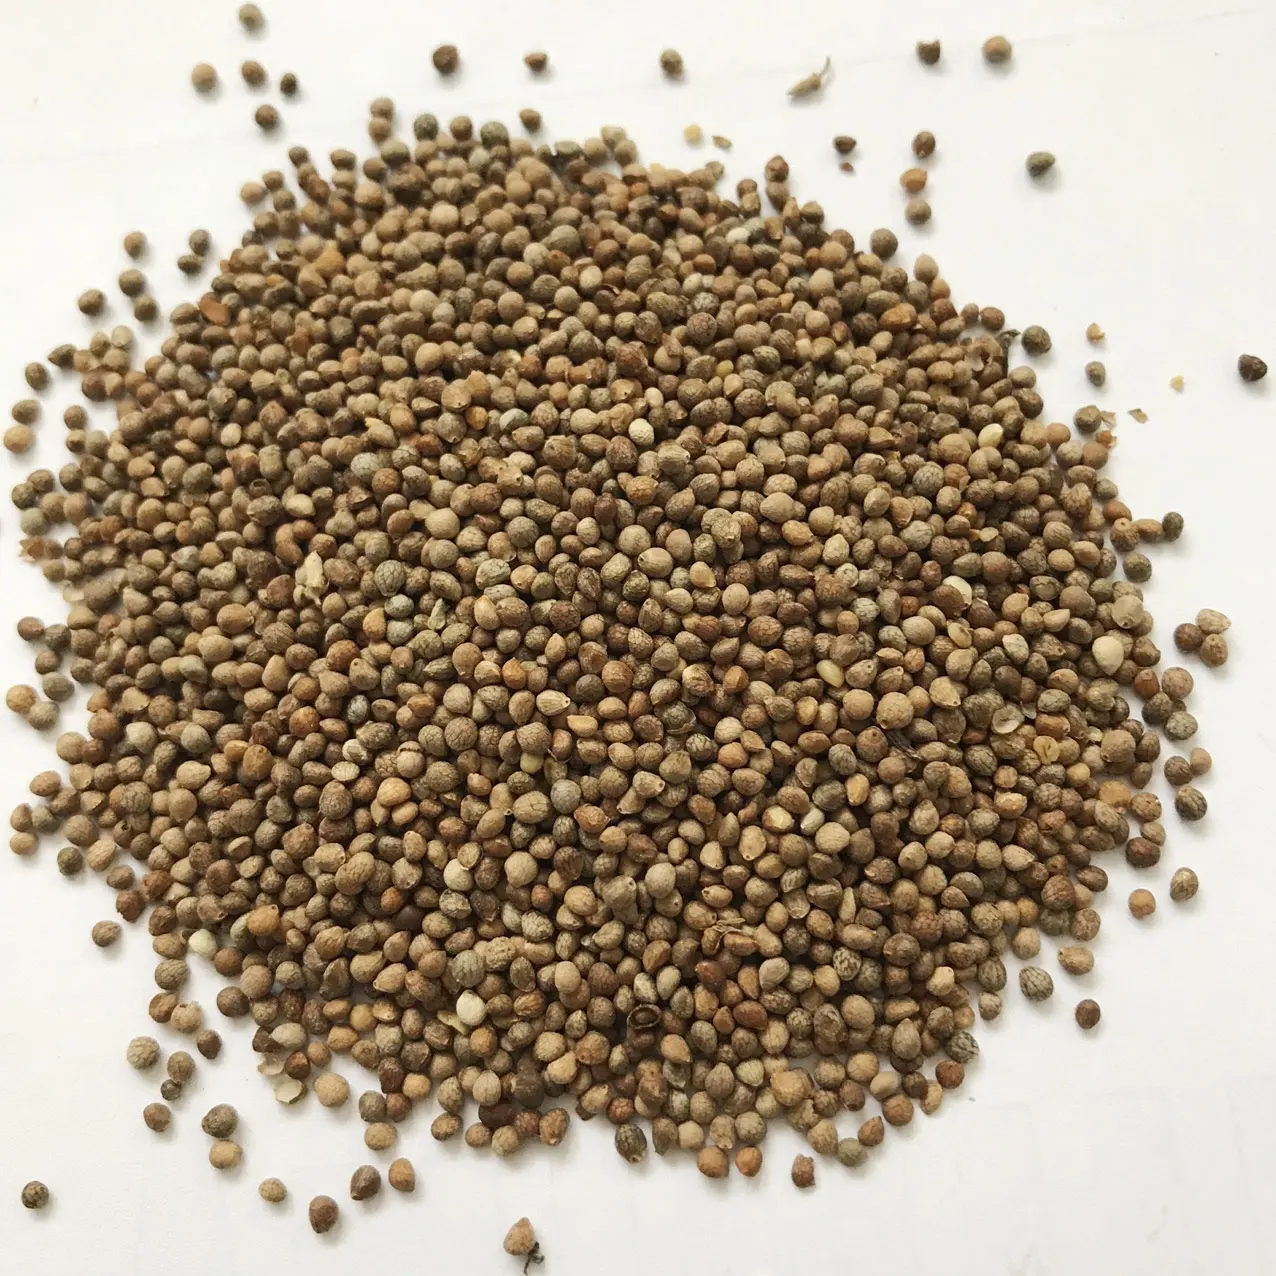 Vente de graines de périlla de haute qualité et à bon prix, graines de périlla biologique brutes